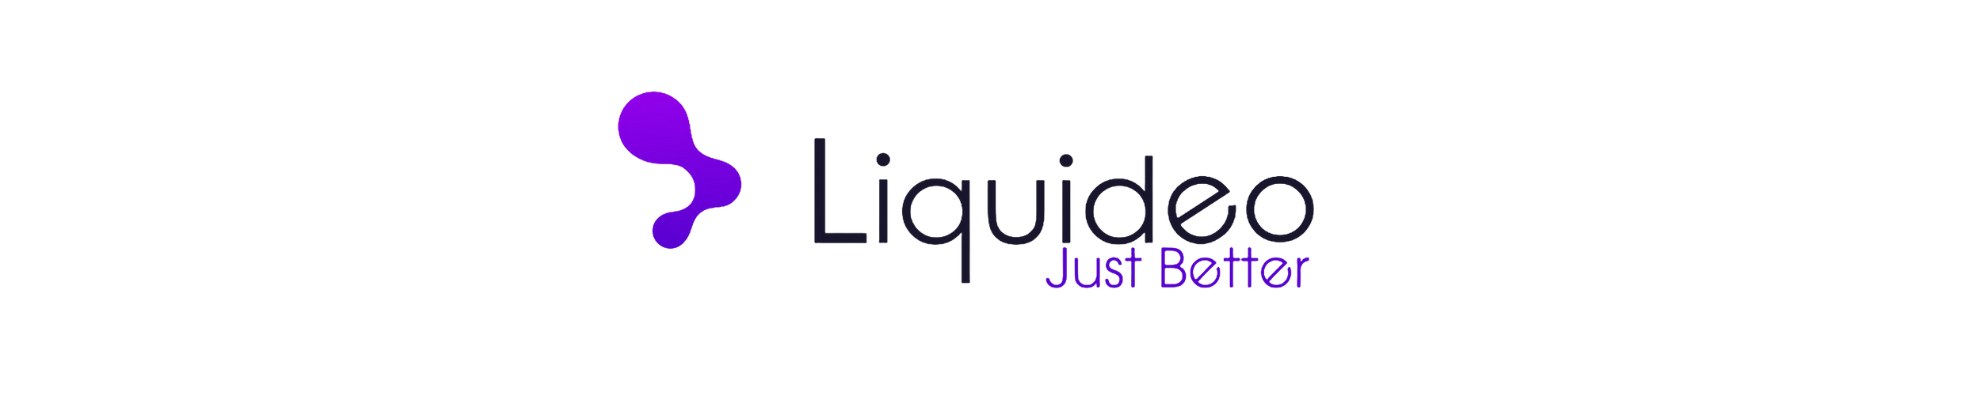 E-liquide Liquideo de qualité supérieure